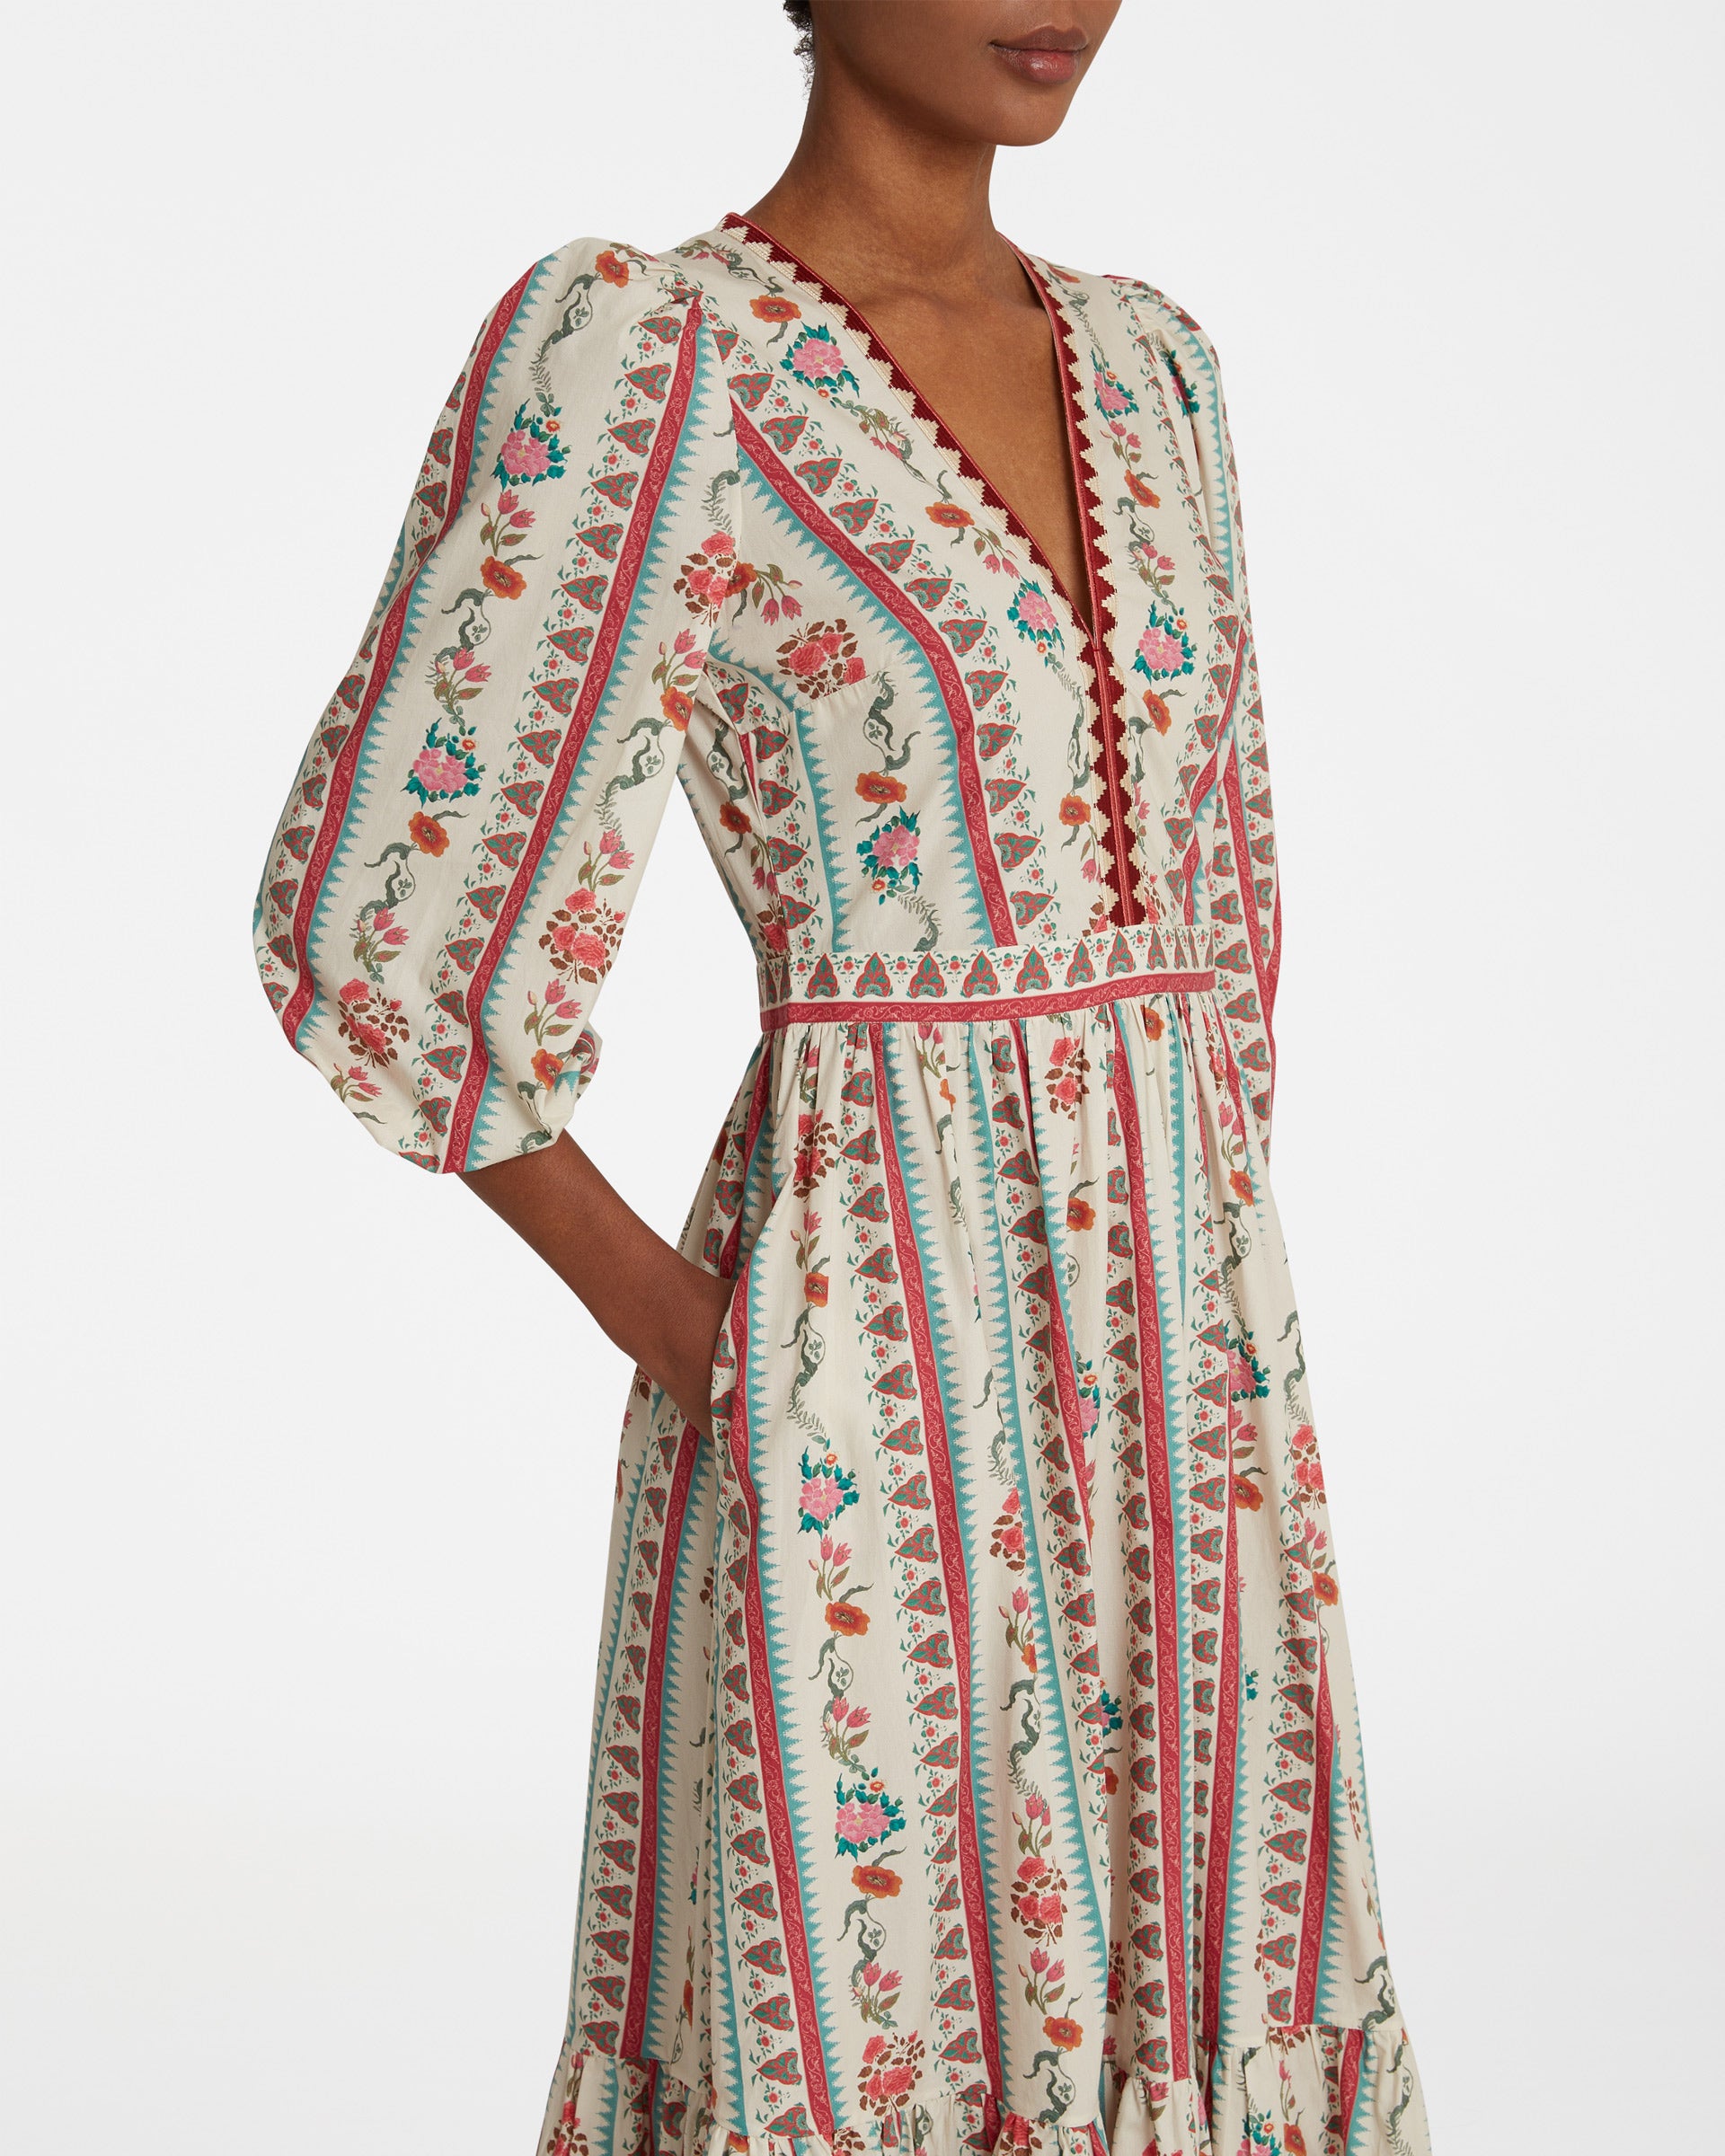 Loretta Dress in Saladin Print